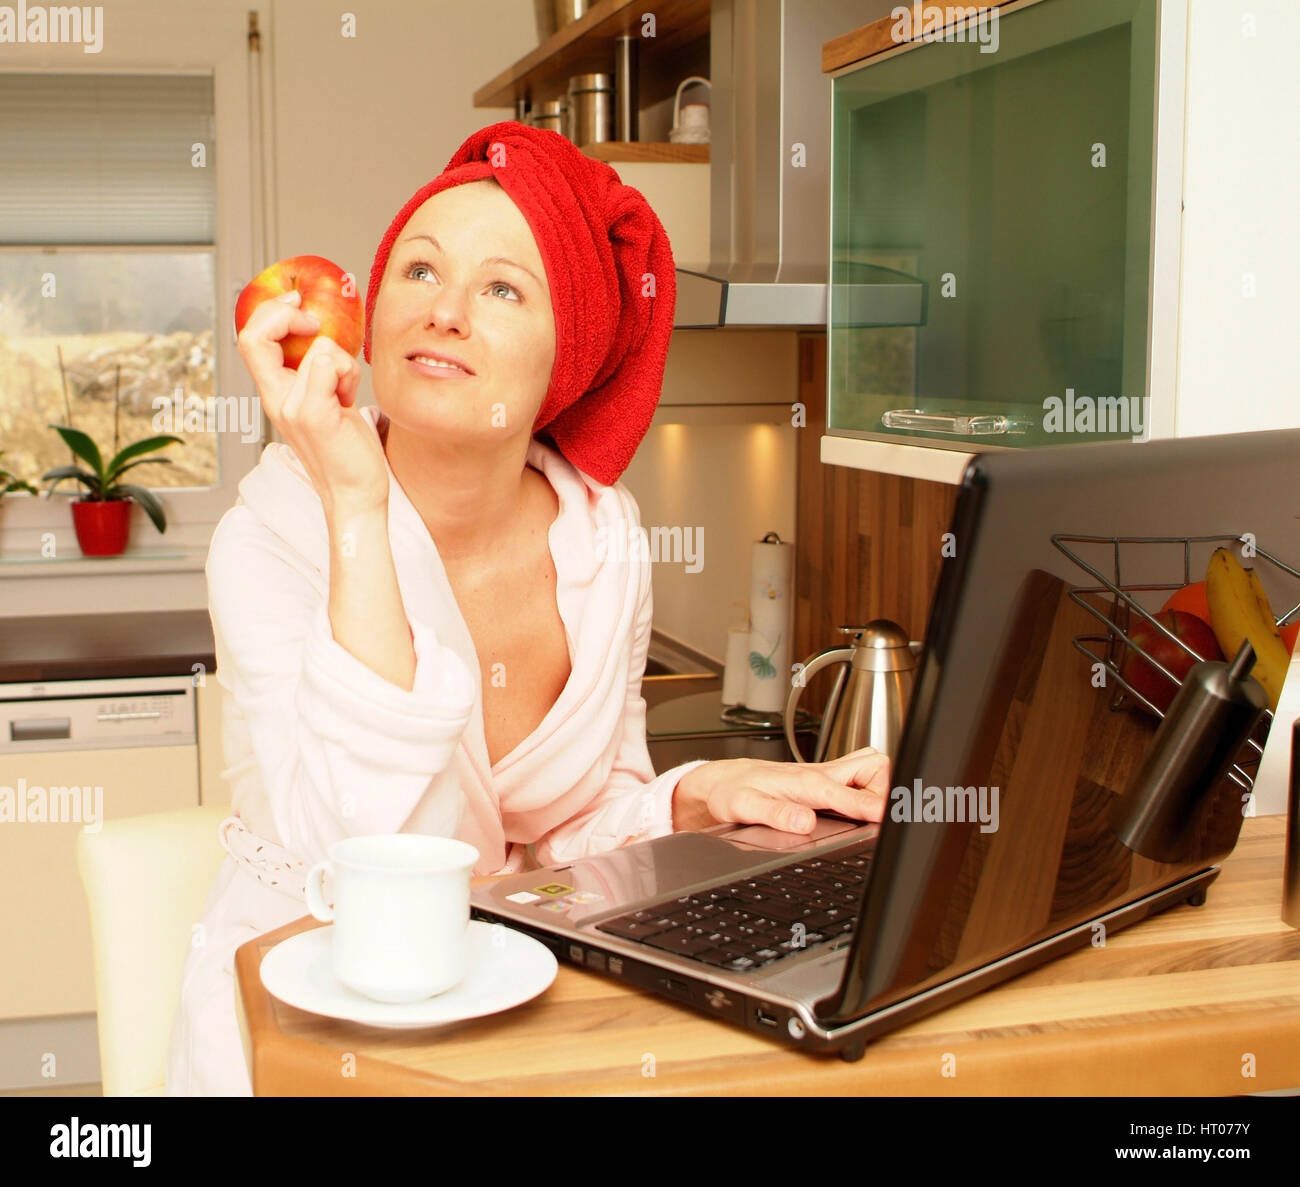 Junge Frau im Morgenmantel arbeitet am Notebook und isst einen Apfel - giovane donna in accappatoio utilizzando laptop e mangiare un Apple Foto Stock